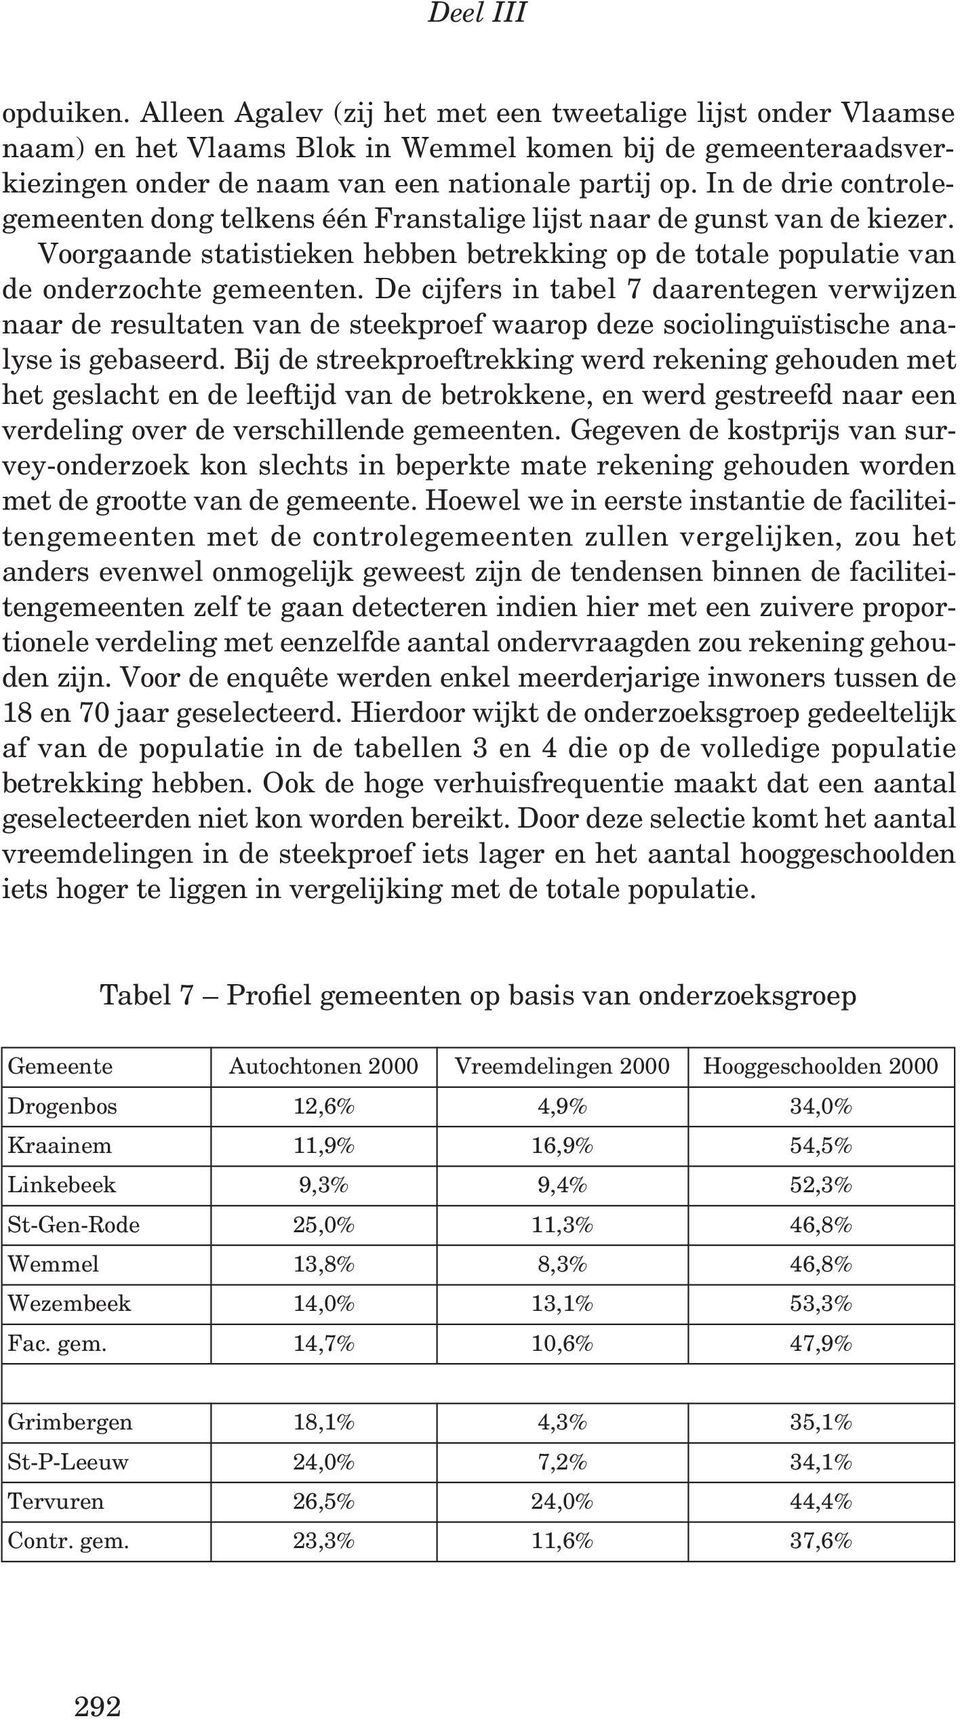 De cijfers in tabel 7 daarentegen verwijzen naar de resultaten van de steekproef waarop deze sociolinguïstische analyse is gebaseerd.